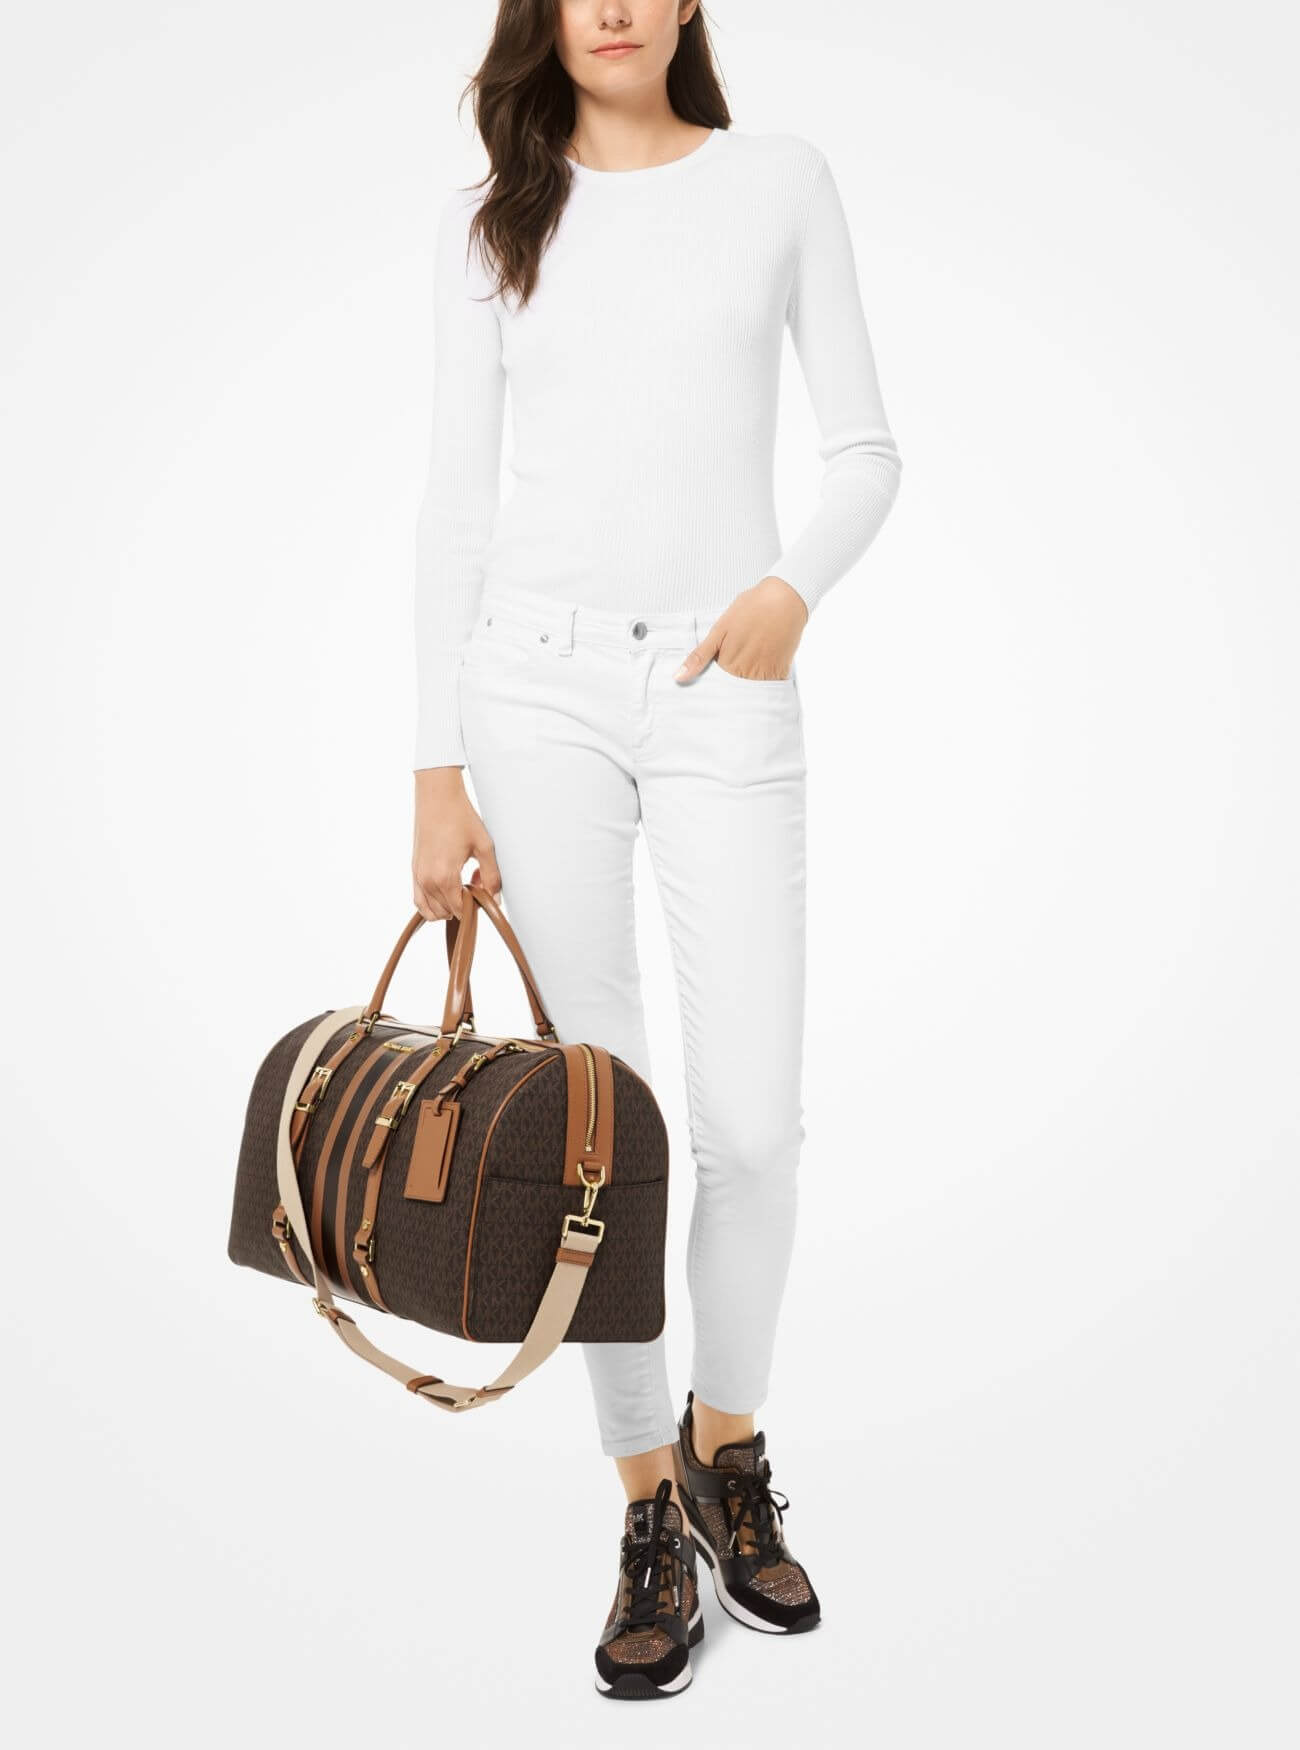 Дорожная сумка Michael Michael Kors Bedford Travel Extra-Large Logo Stripe Weekender, коричневый/светло-коричневый цена и фото